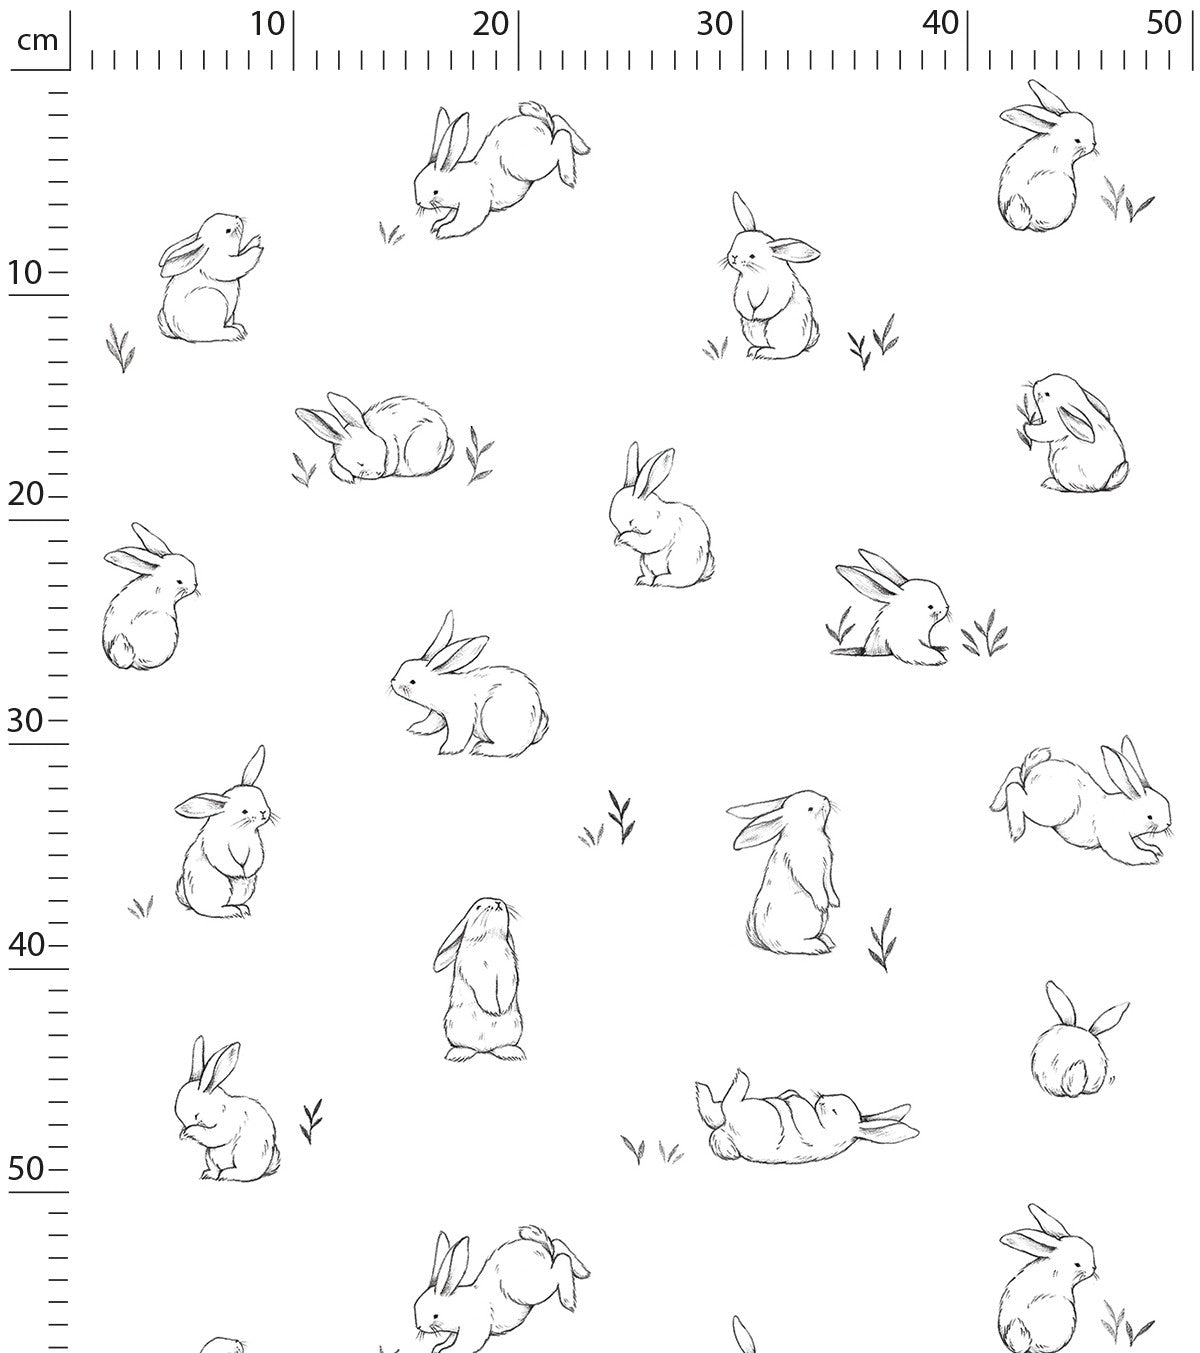 BUNNY - Tapet för barn - Motiv av små kaniner